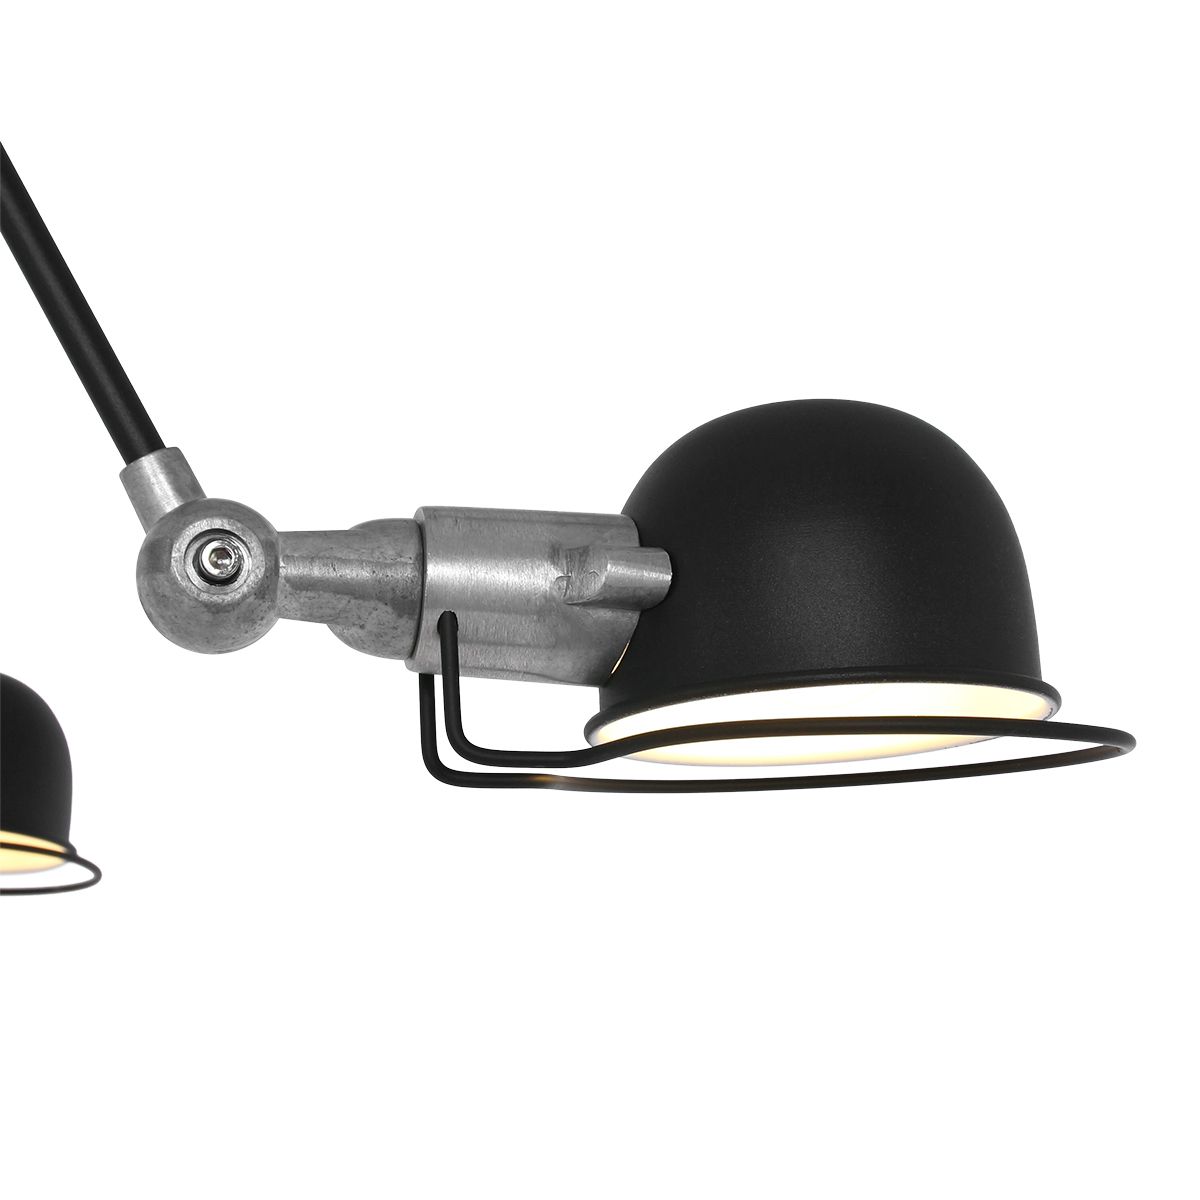 Fabriklampe als Kronleuchter Tischdeckenlampe Loft-Stye